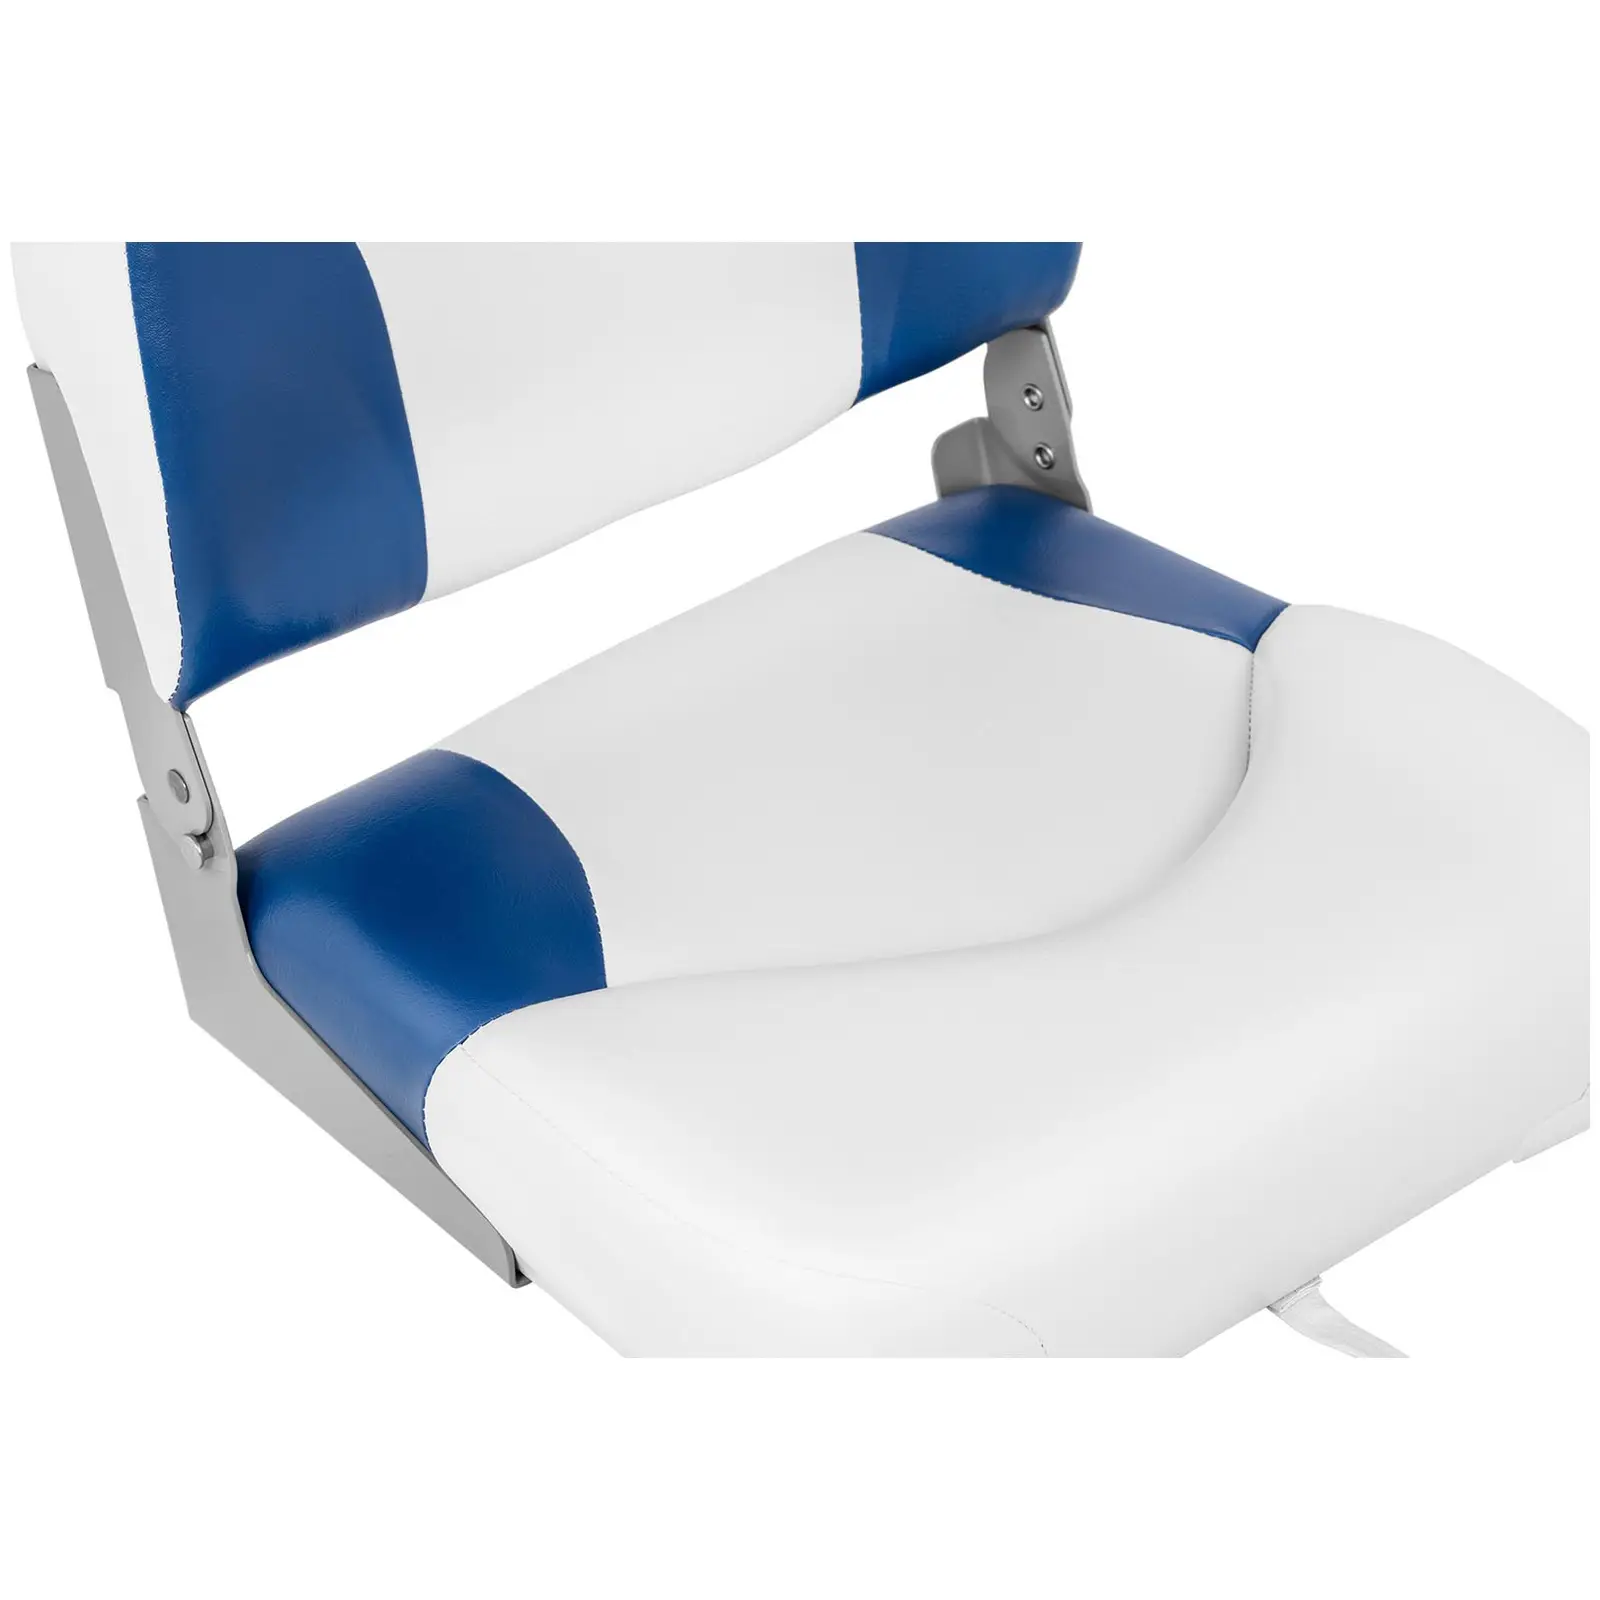 Siège de bateau - 40x40x50 cm - Blanc et bleu